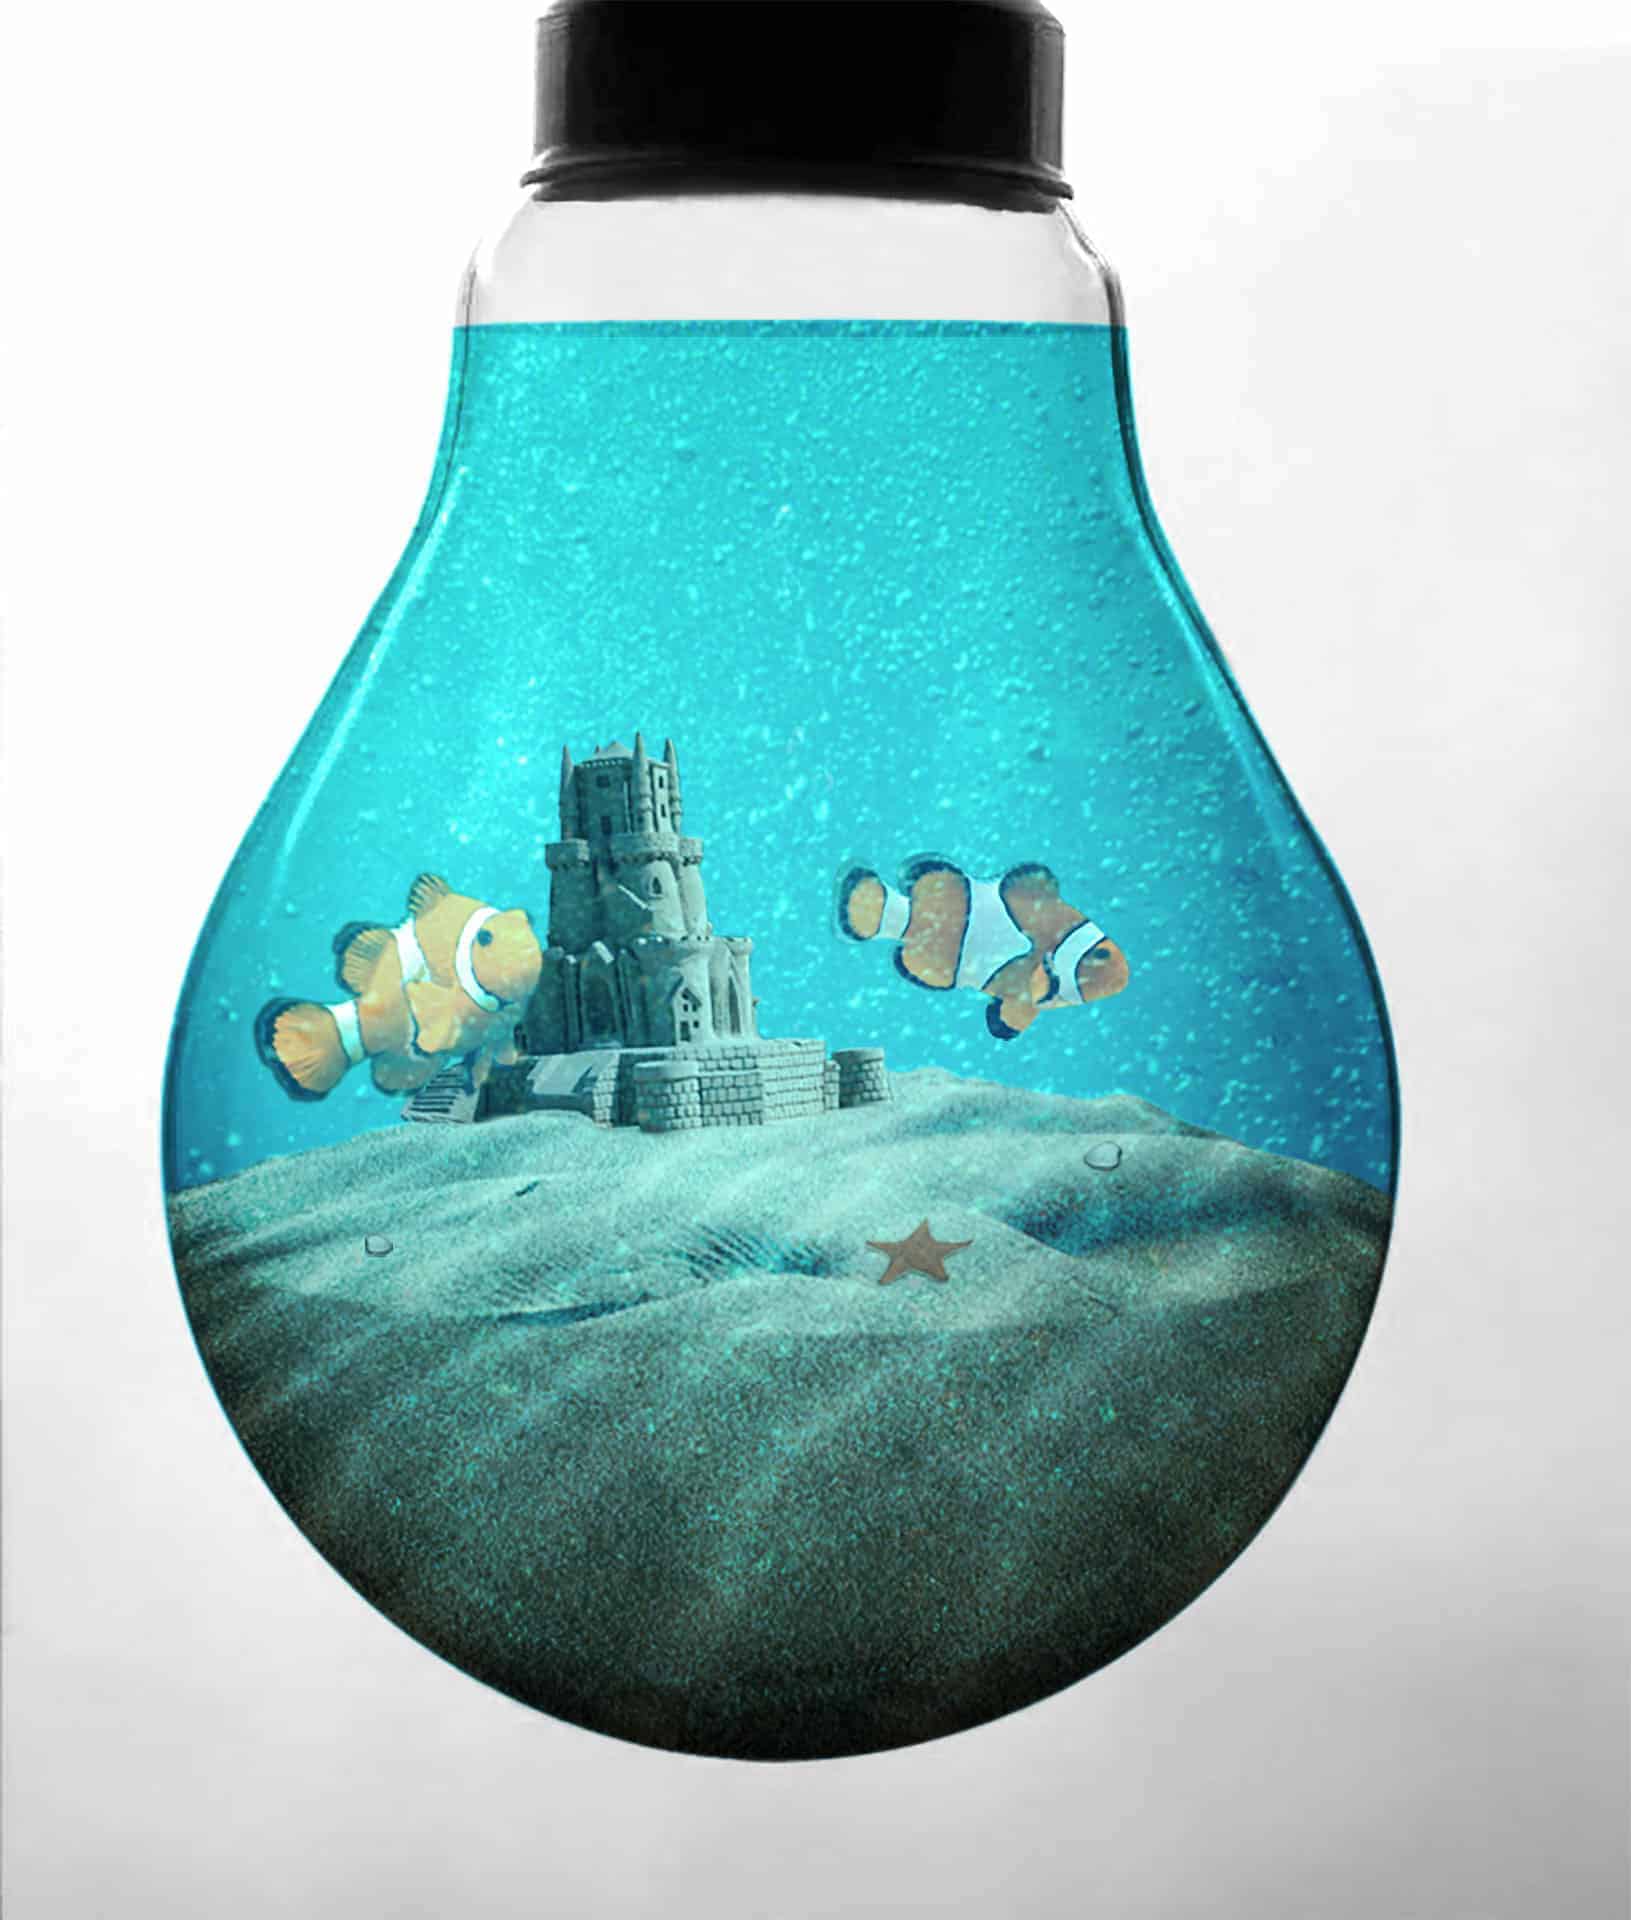 Create an Aquarium Inside a Light Bulb with Photoshop